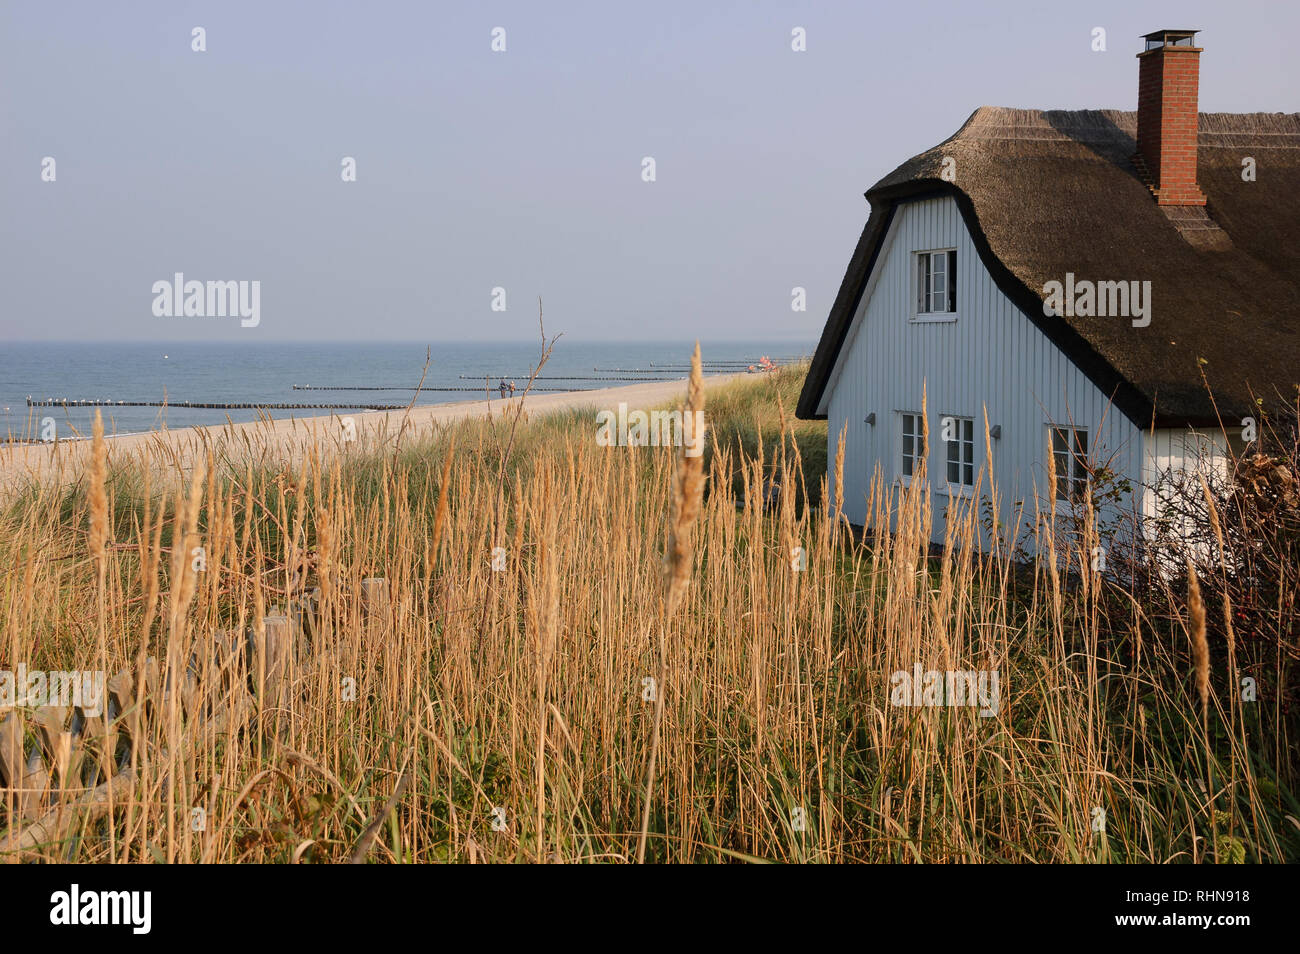 Ahrenshoop auf der Halbinsel Fischland, Darß, Zingst, Mecklenburg-Vorpommern, Deutschland Stock Photo